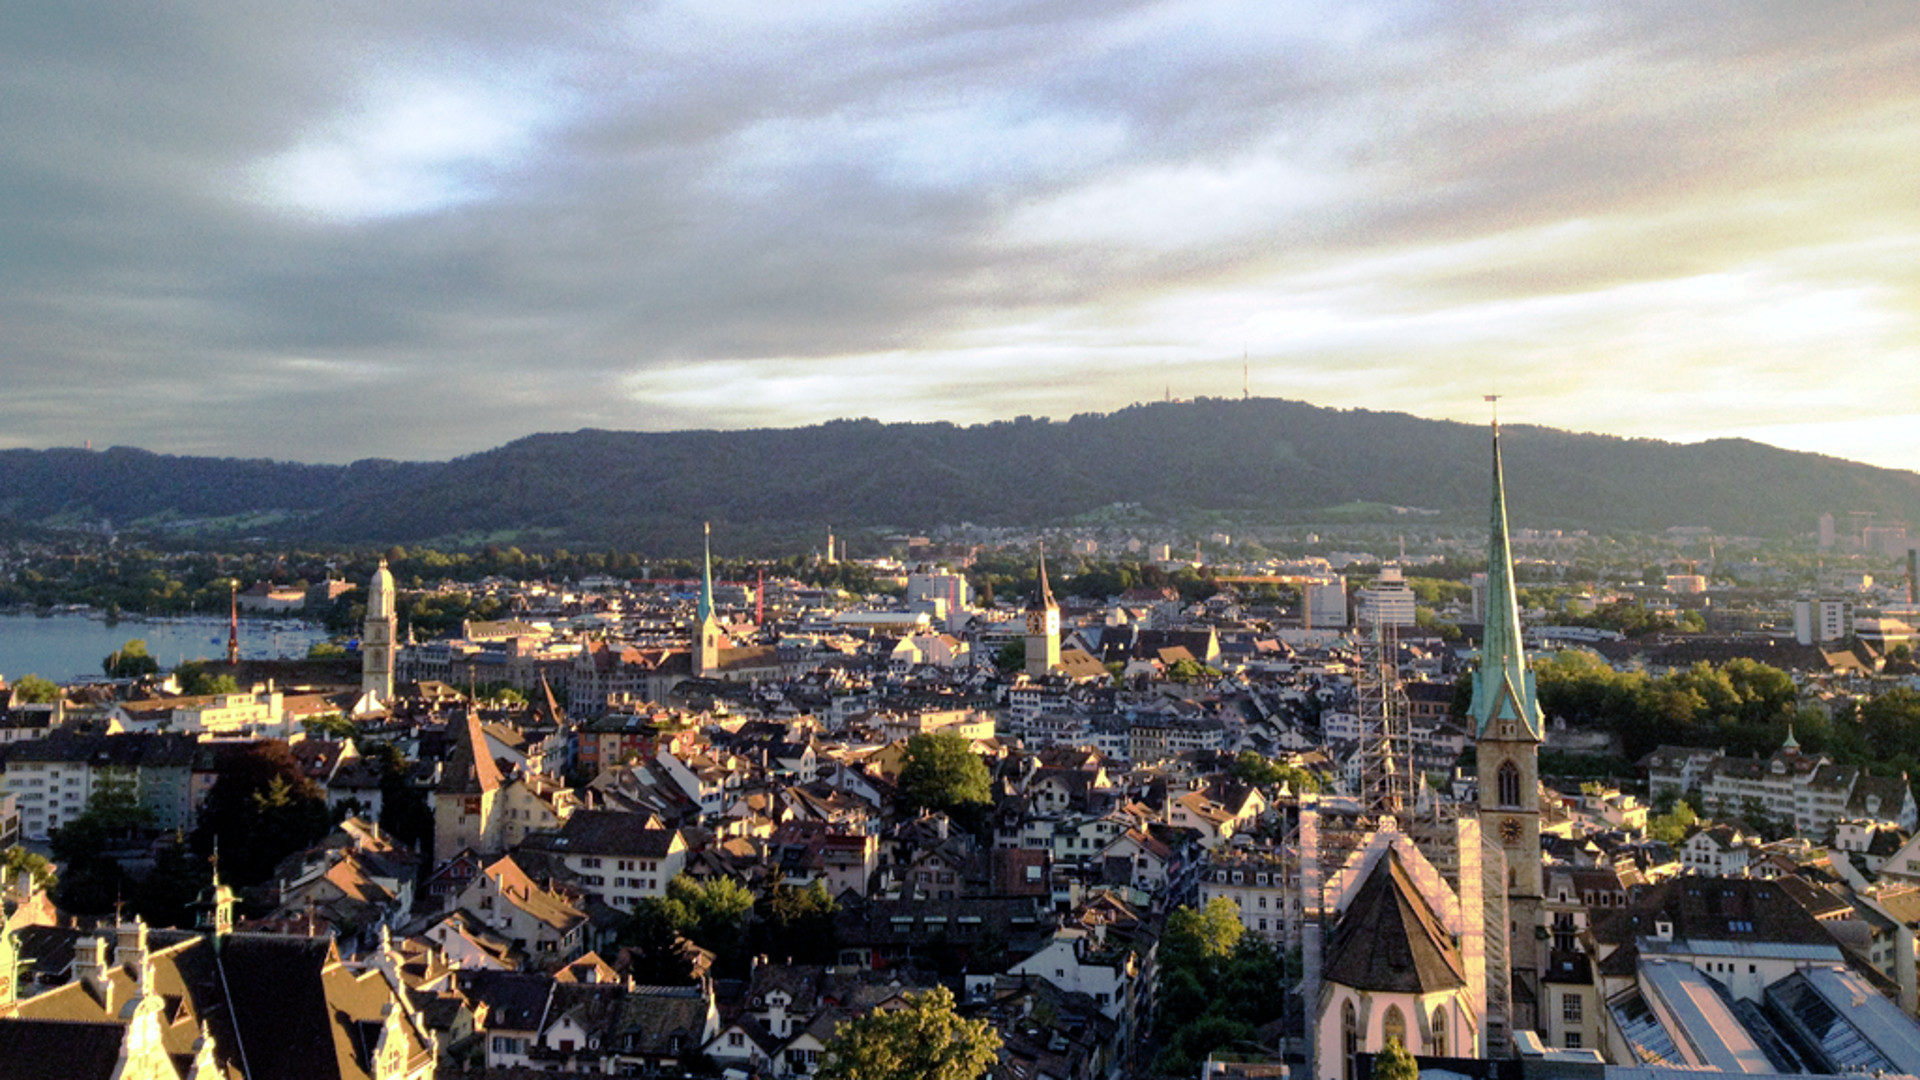 Blick auf die Altstadt von Zürich mit ihren Kirchen